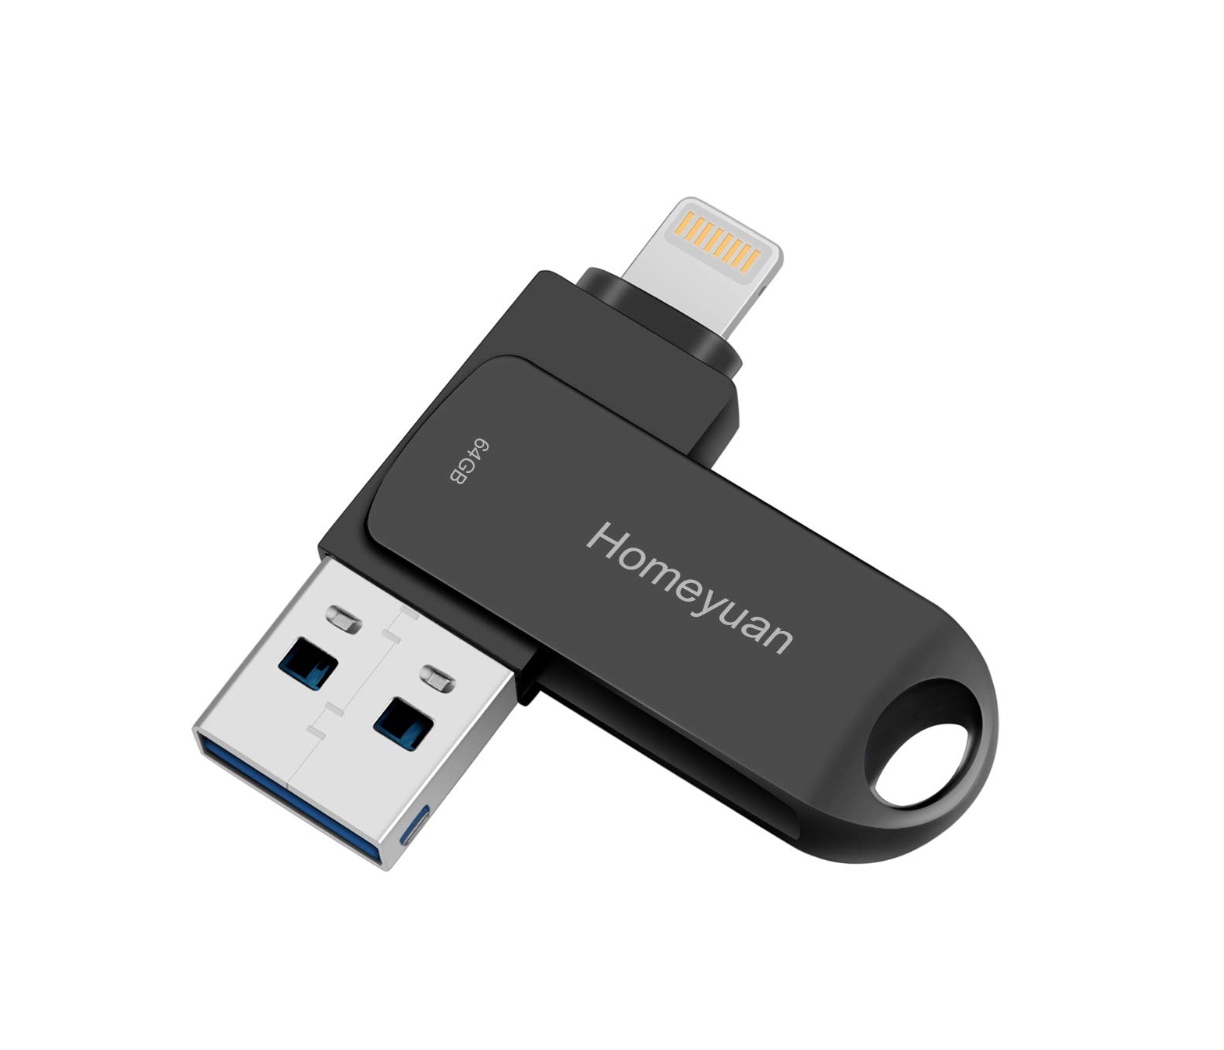 Homeyuan USBメモリ フラッシュドライブ回転式4in1 小型でコスパ良好 iPhoneにも繋げられる - Demi Labo